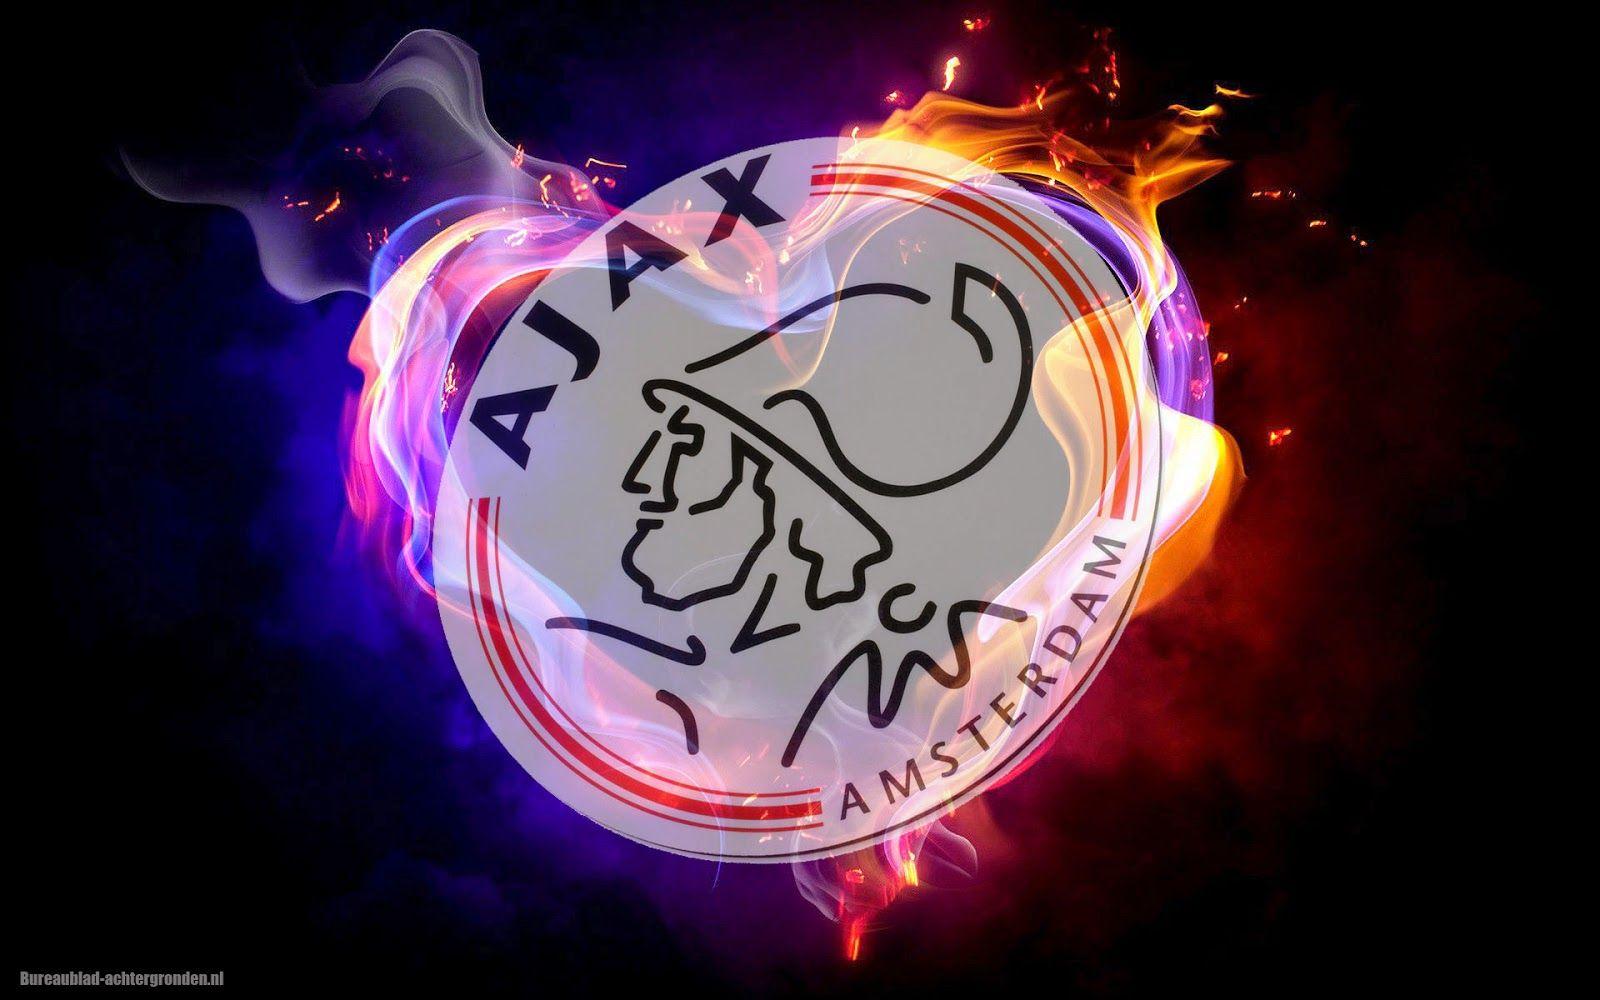 Voetbalclub Ajax wallpaper met vuur